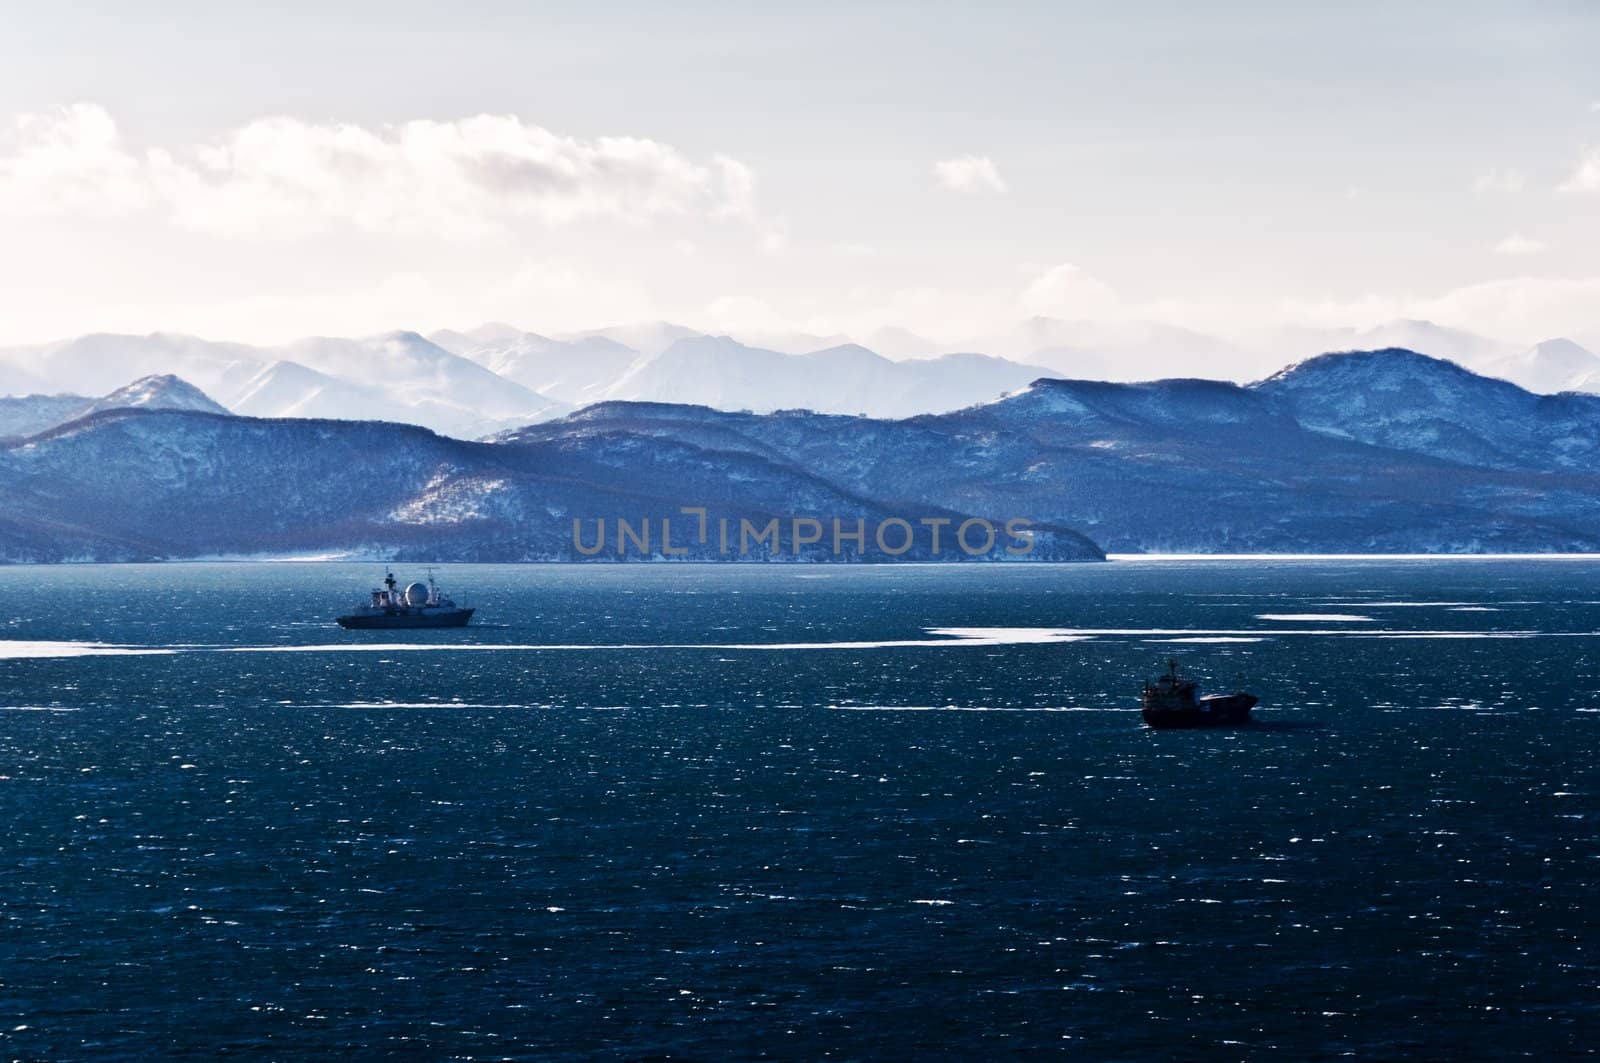 landscape of silent ocean on Kamchatka in Russia